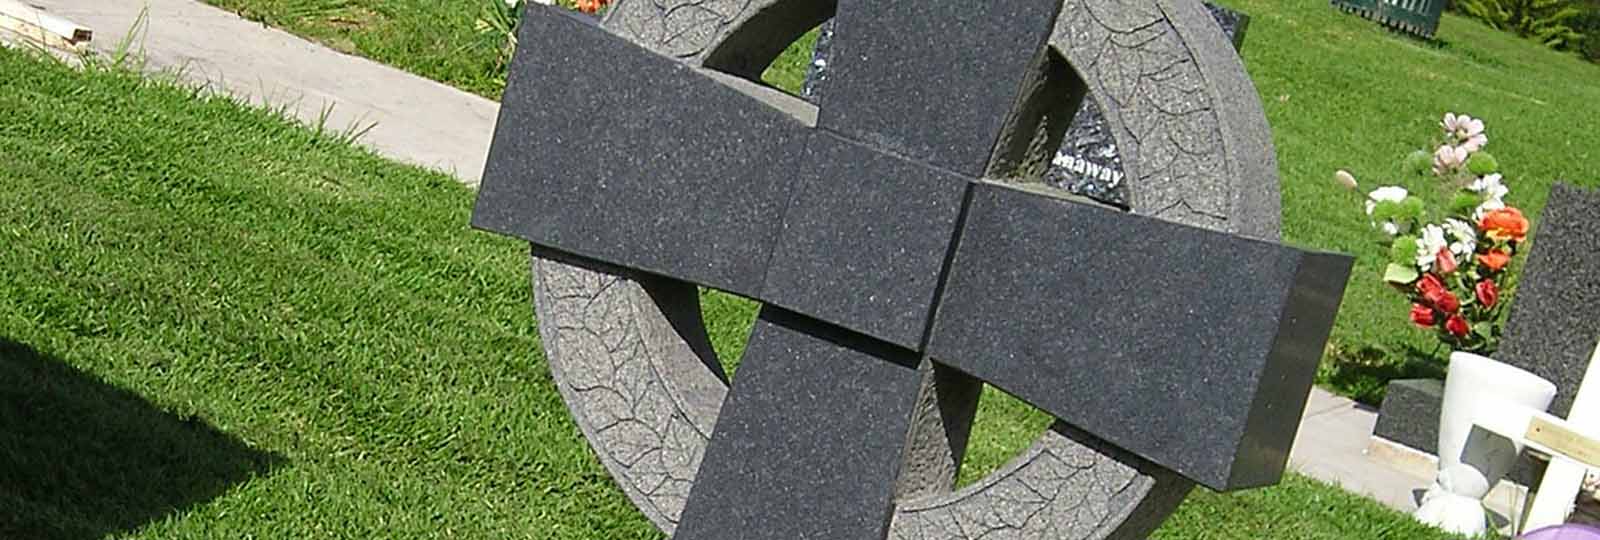 cross headstones and memorials